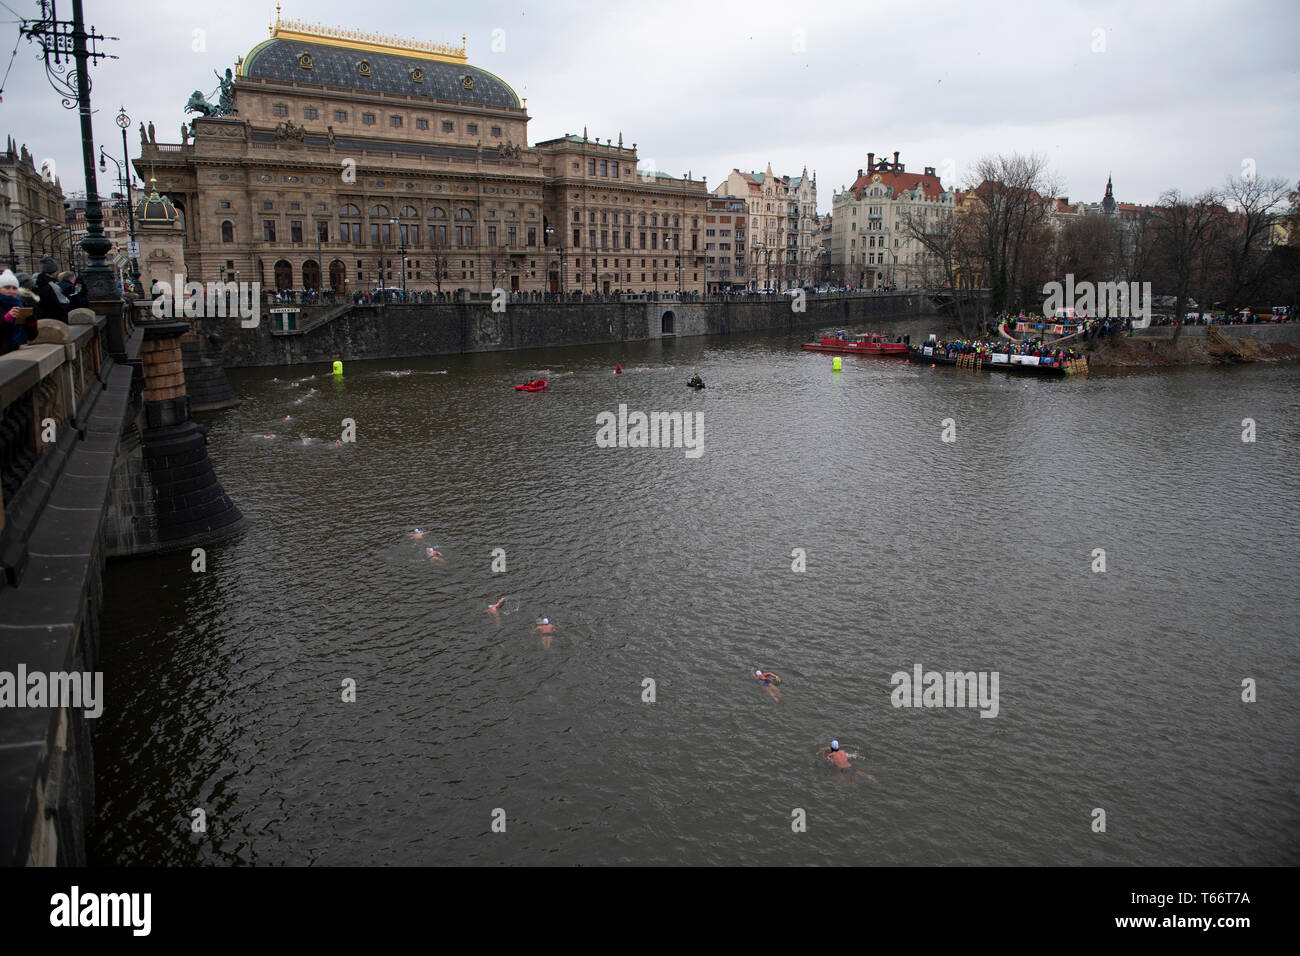 Gli amanti del nuoto corrono sul fiume Moldava presso il Teatro Nazionale dal Ponte Legione, Praga, Repubblica Ceca Foto Stock